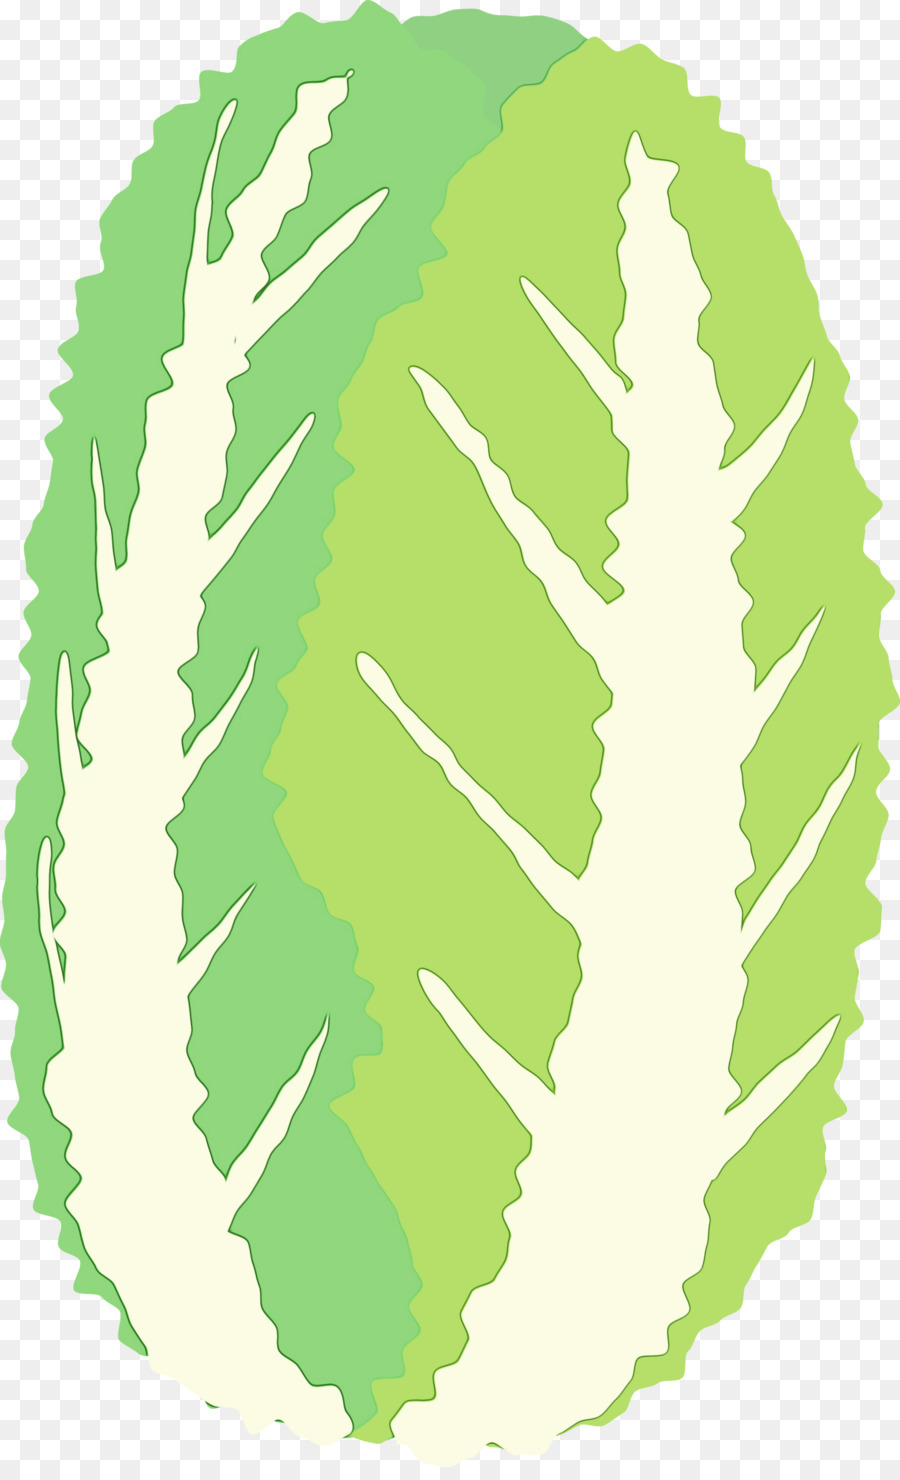 leaf plant